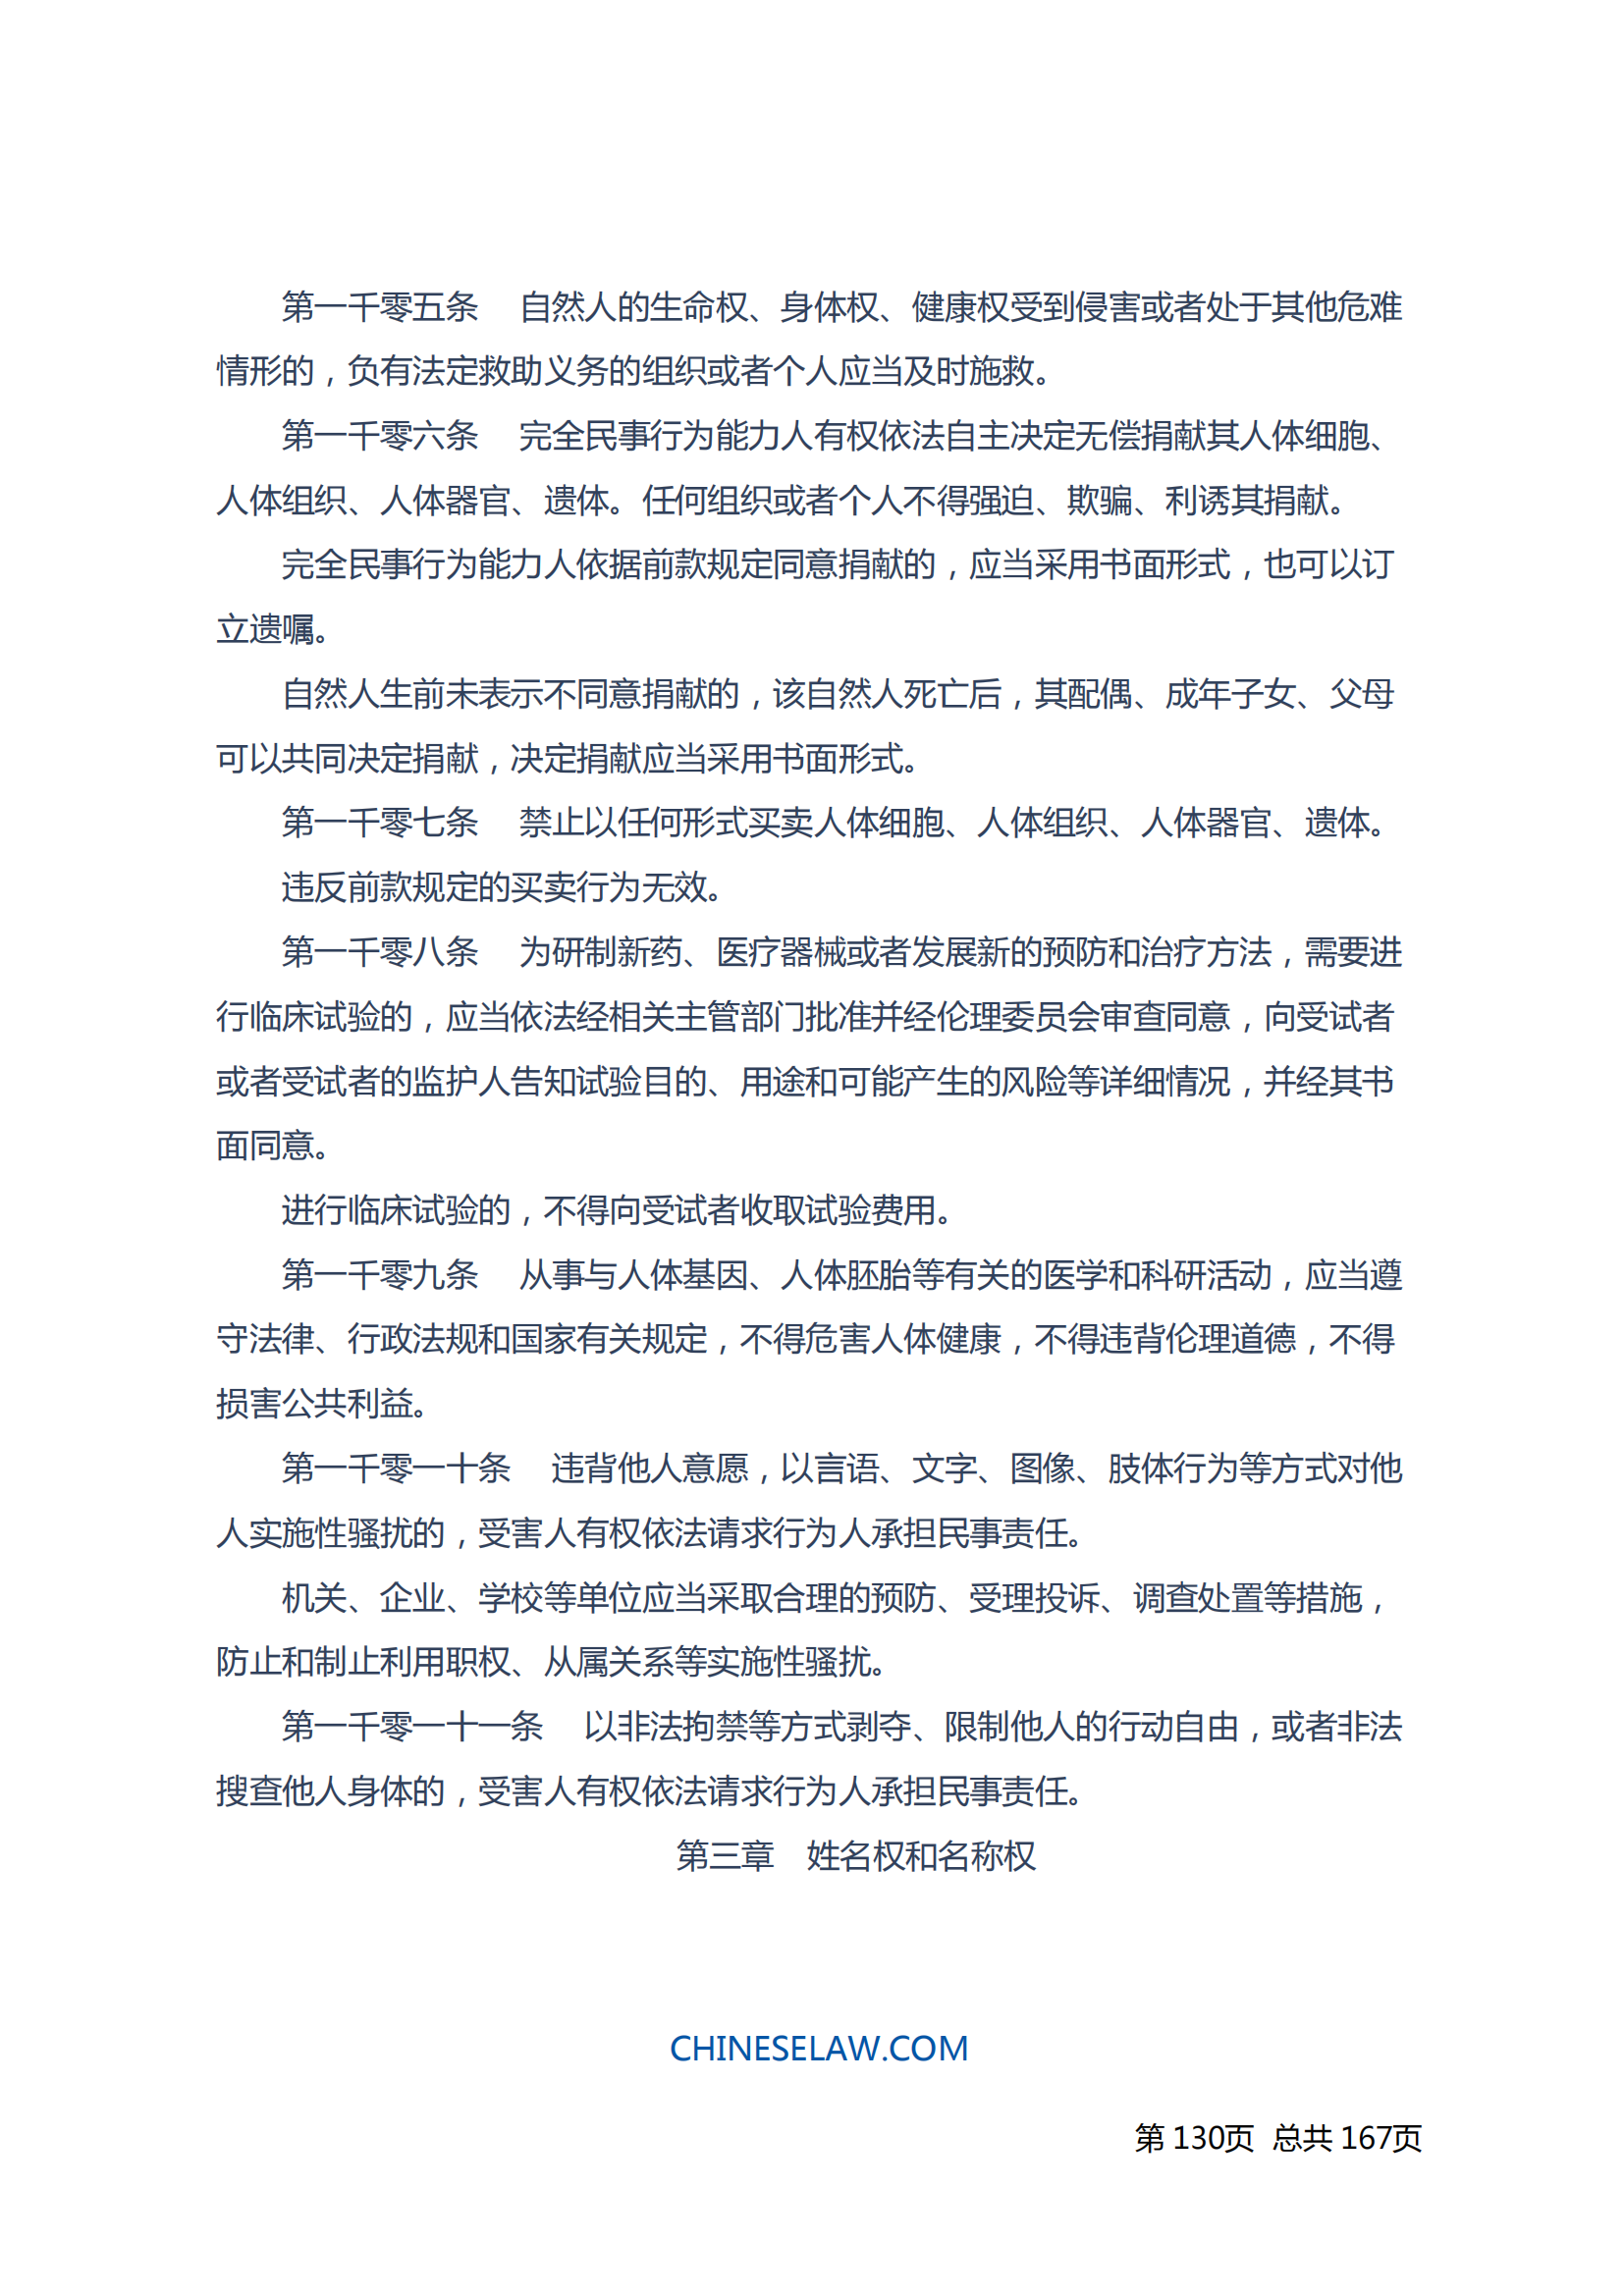 中华人民共和国民法典_129